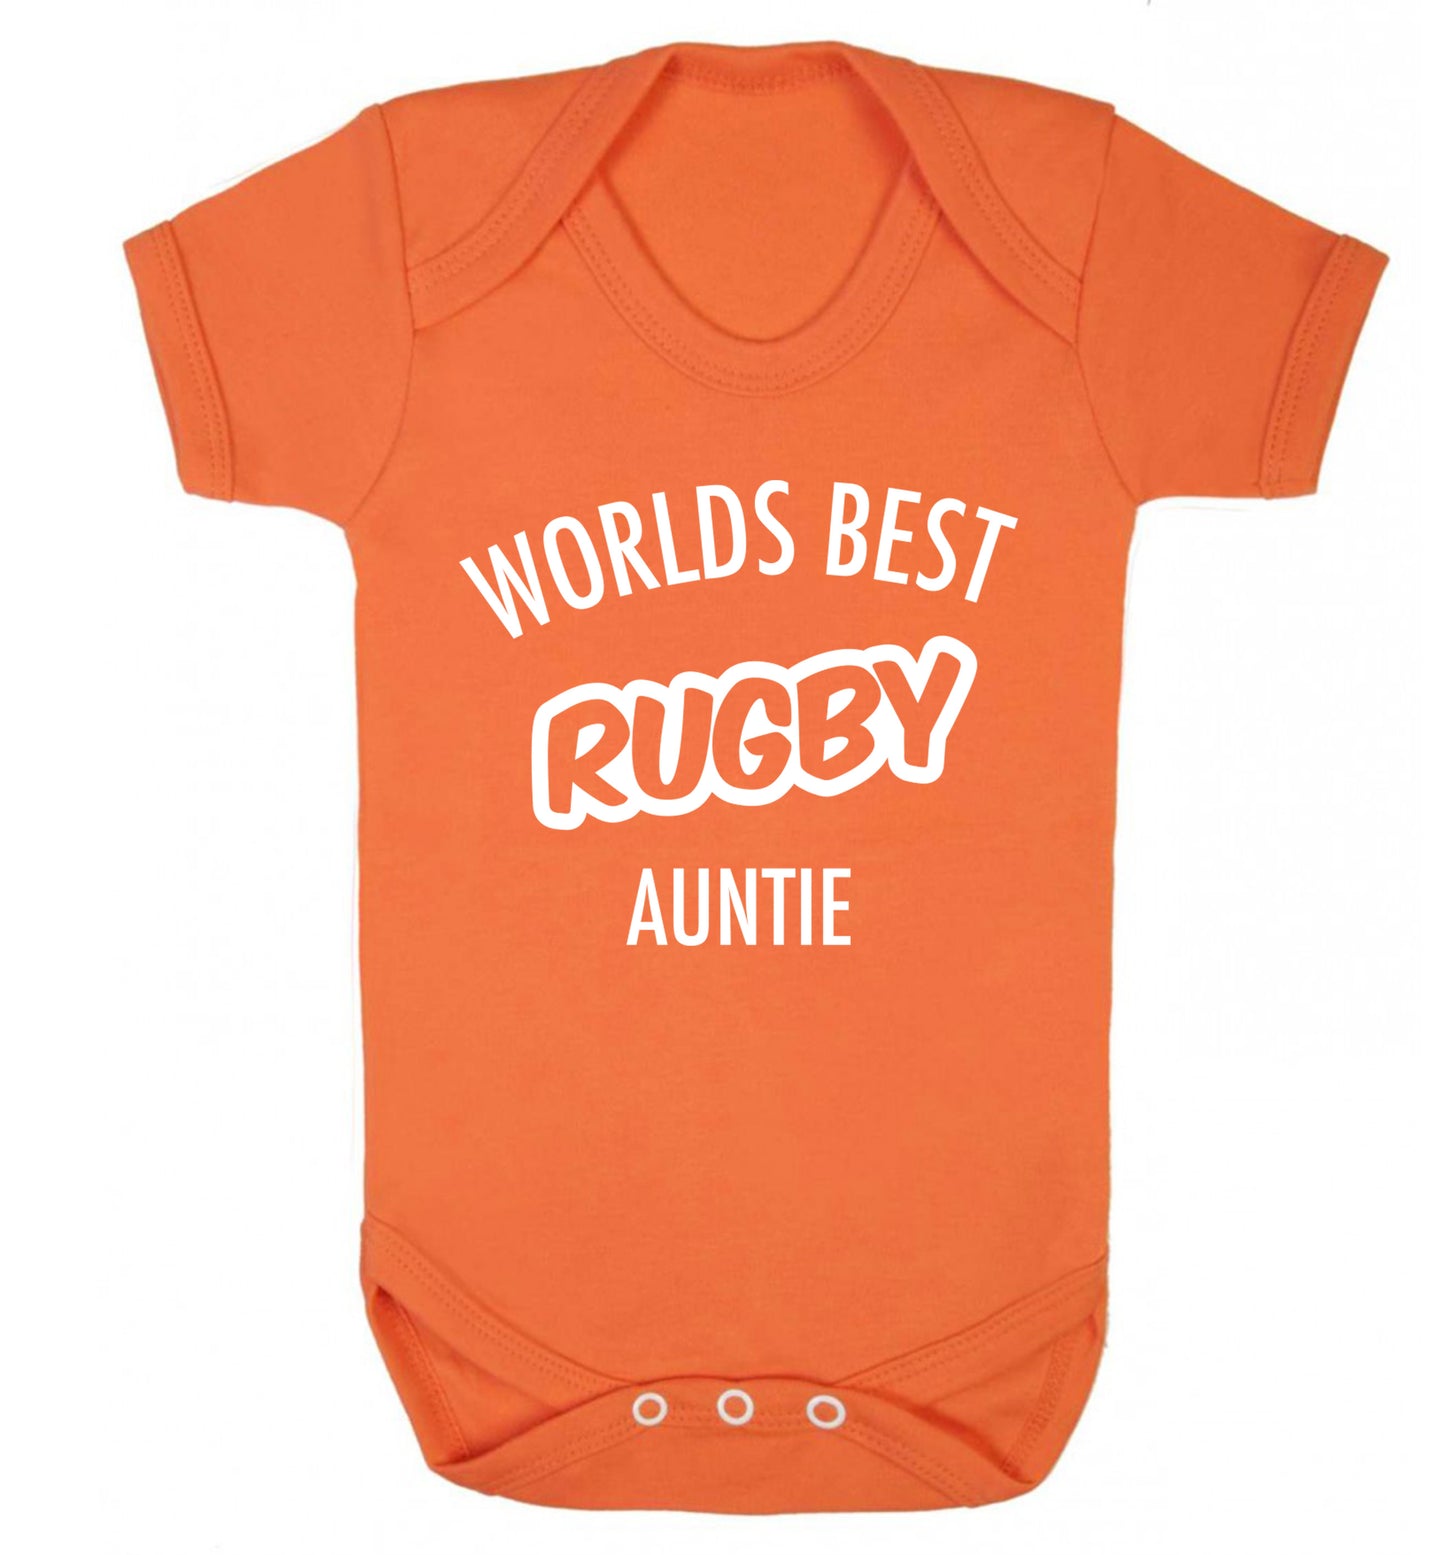 Worlds best rugby auntie Baby Vest orange 18-24 months